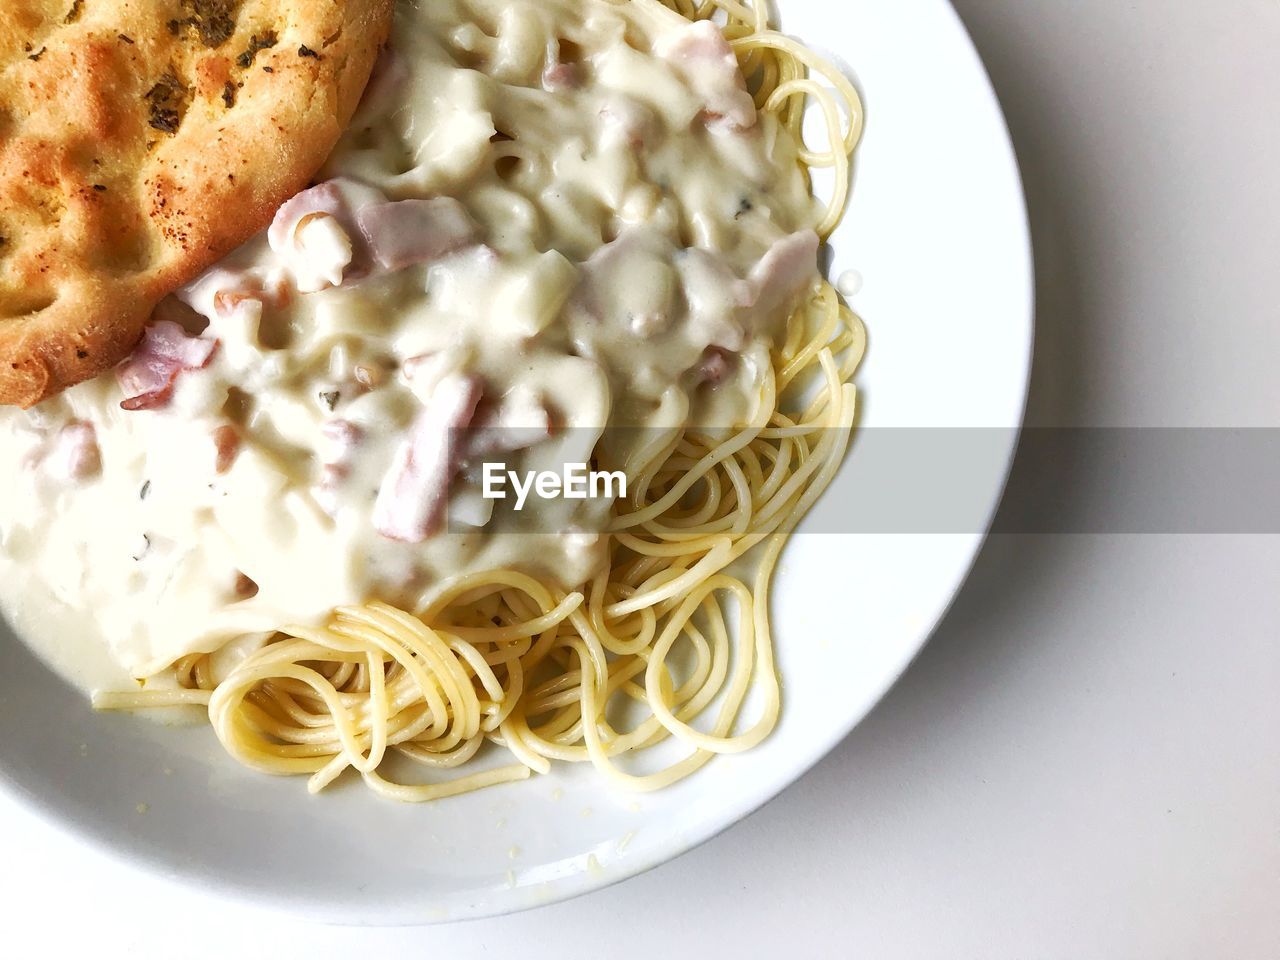 Spaghetti carbonara with garlic bread.